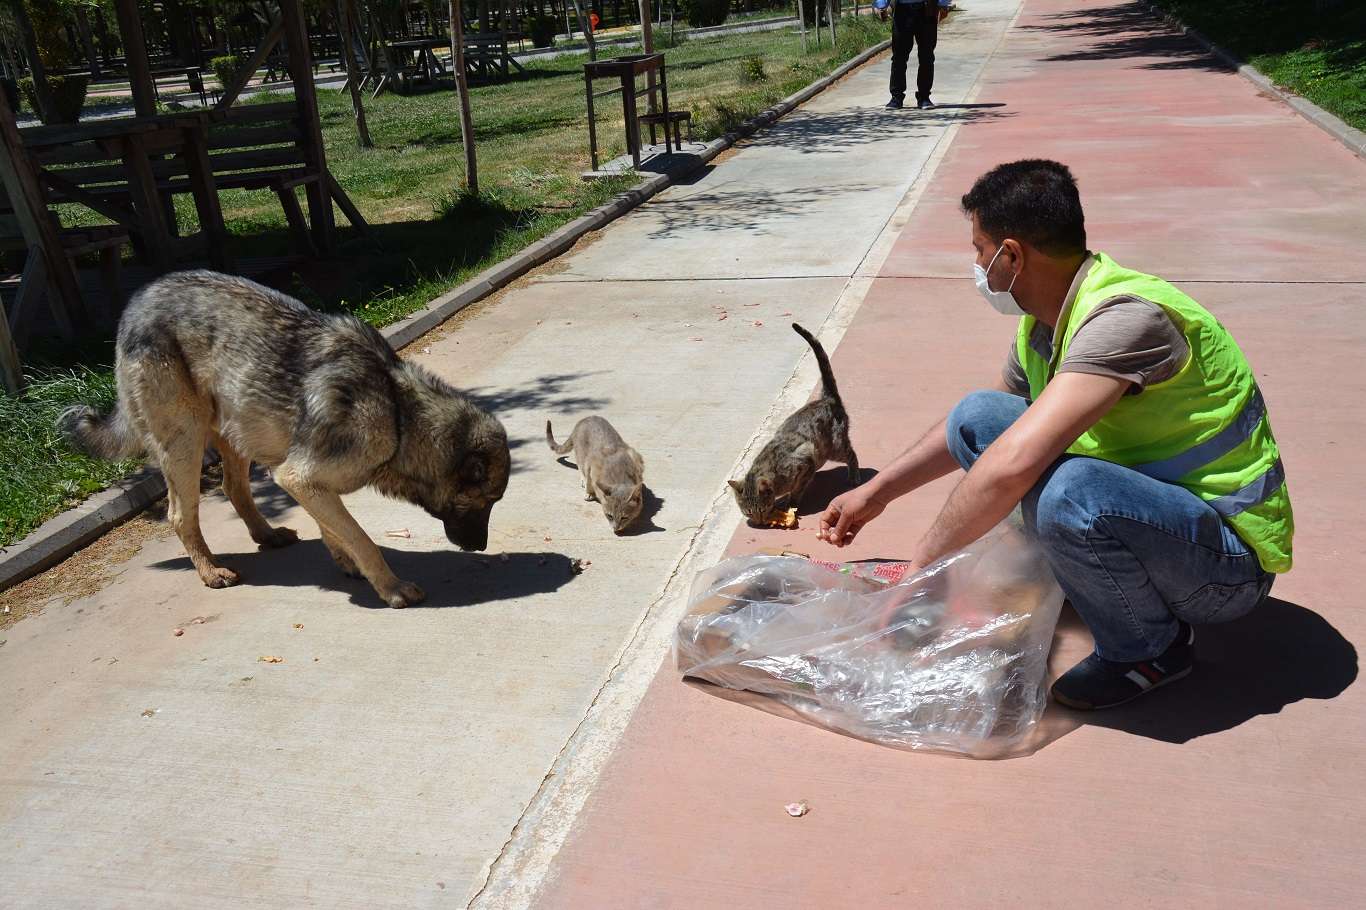  Siverek Belediyesi yavru köpeğe ötenazi yapıldığı iddialarını yalanladı